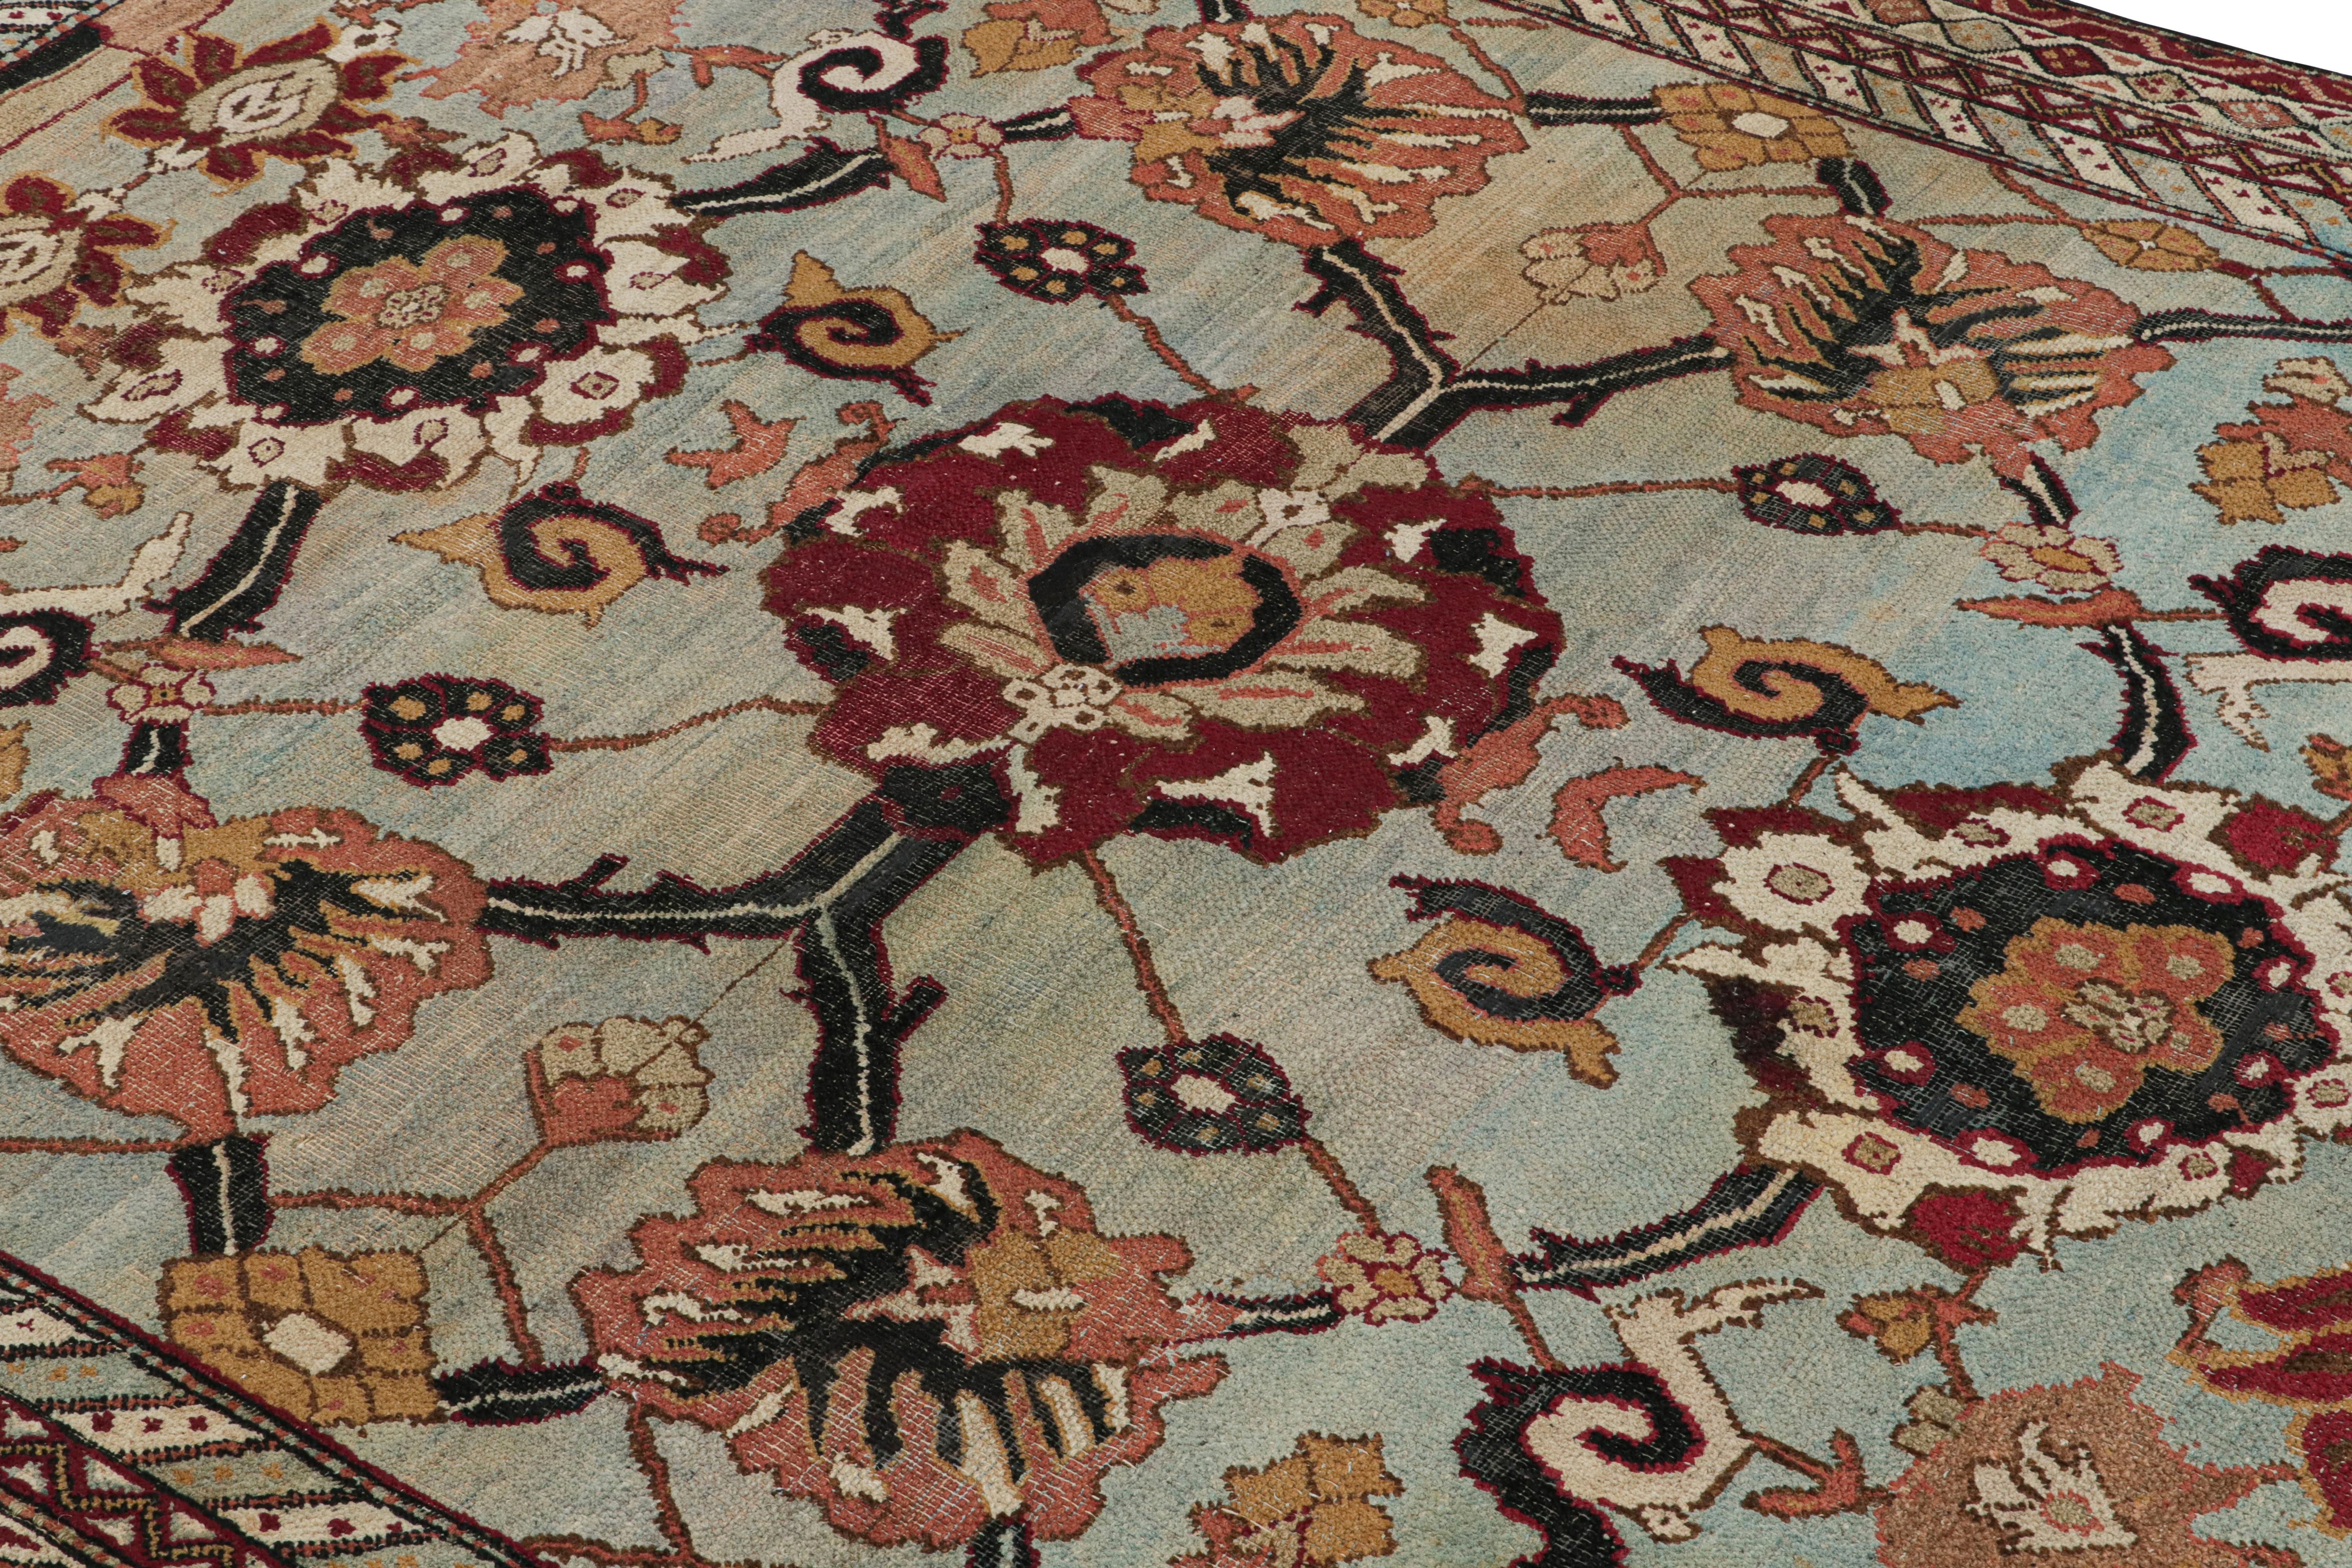 Dieser 6x8 große antike Agra-Teppich wurde von Hand in Wolle geknüpft und stammt vermutlich aus der Zeit von 1880 bis 1890. Er ist eine aufregende neue Kuration aus einer außergewöhnlichen Sammlung seltener indischer Teppiche. 

Über das Design: